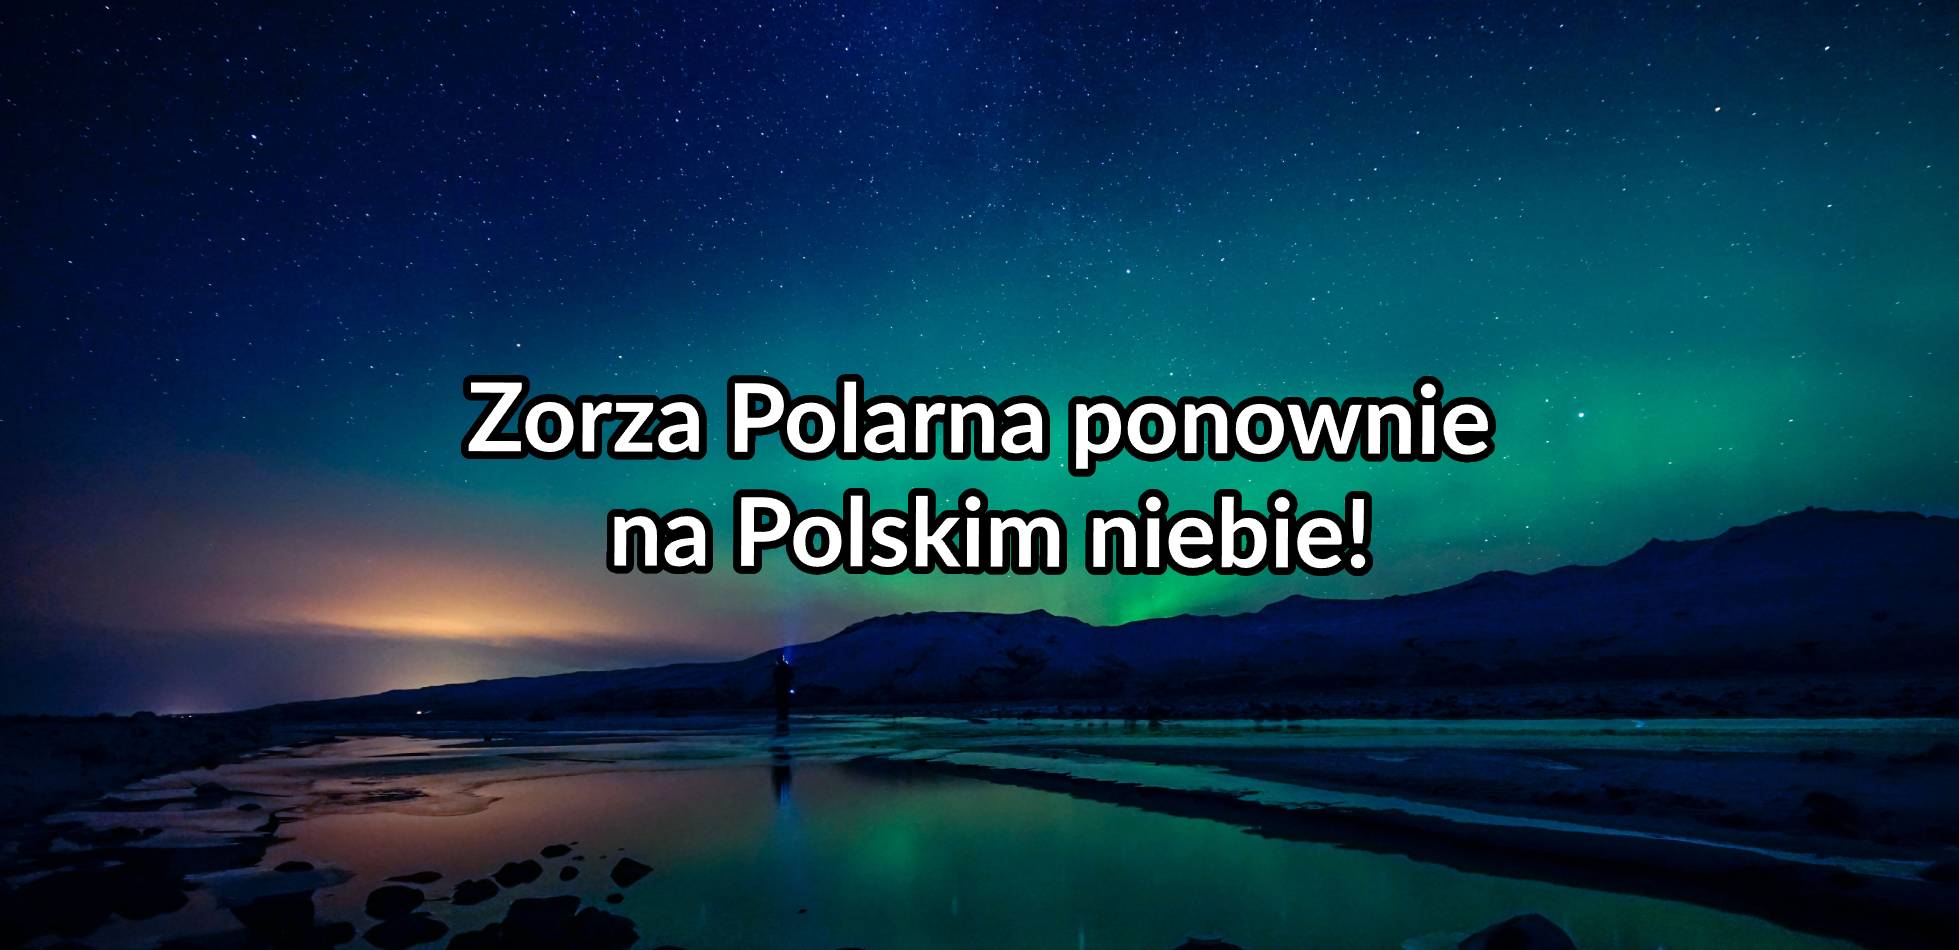 Zorza Polarna ponownie na Polskim niebie!